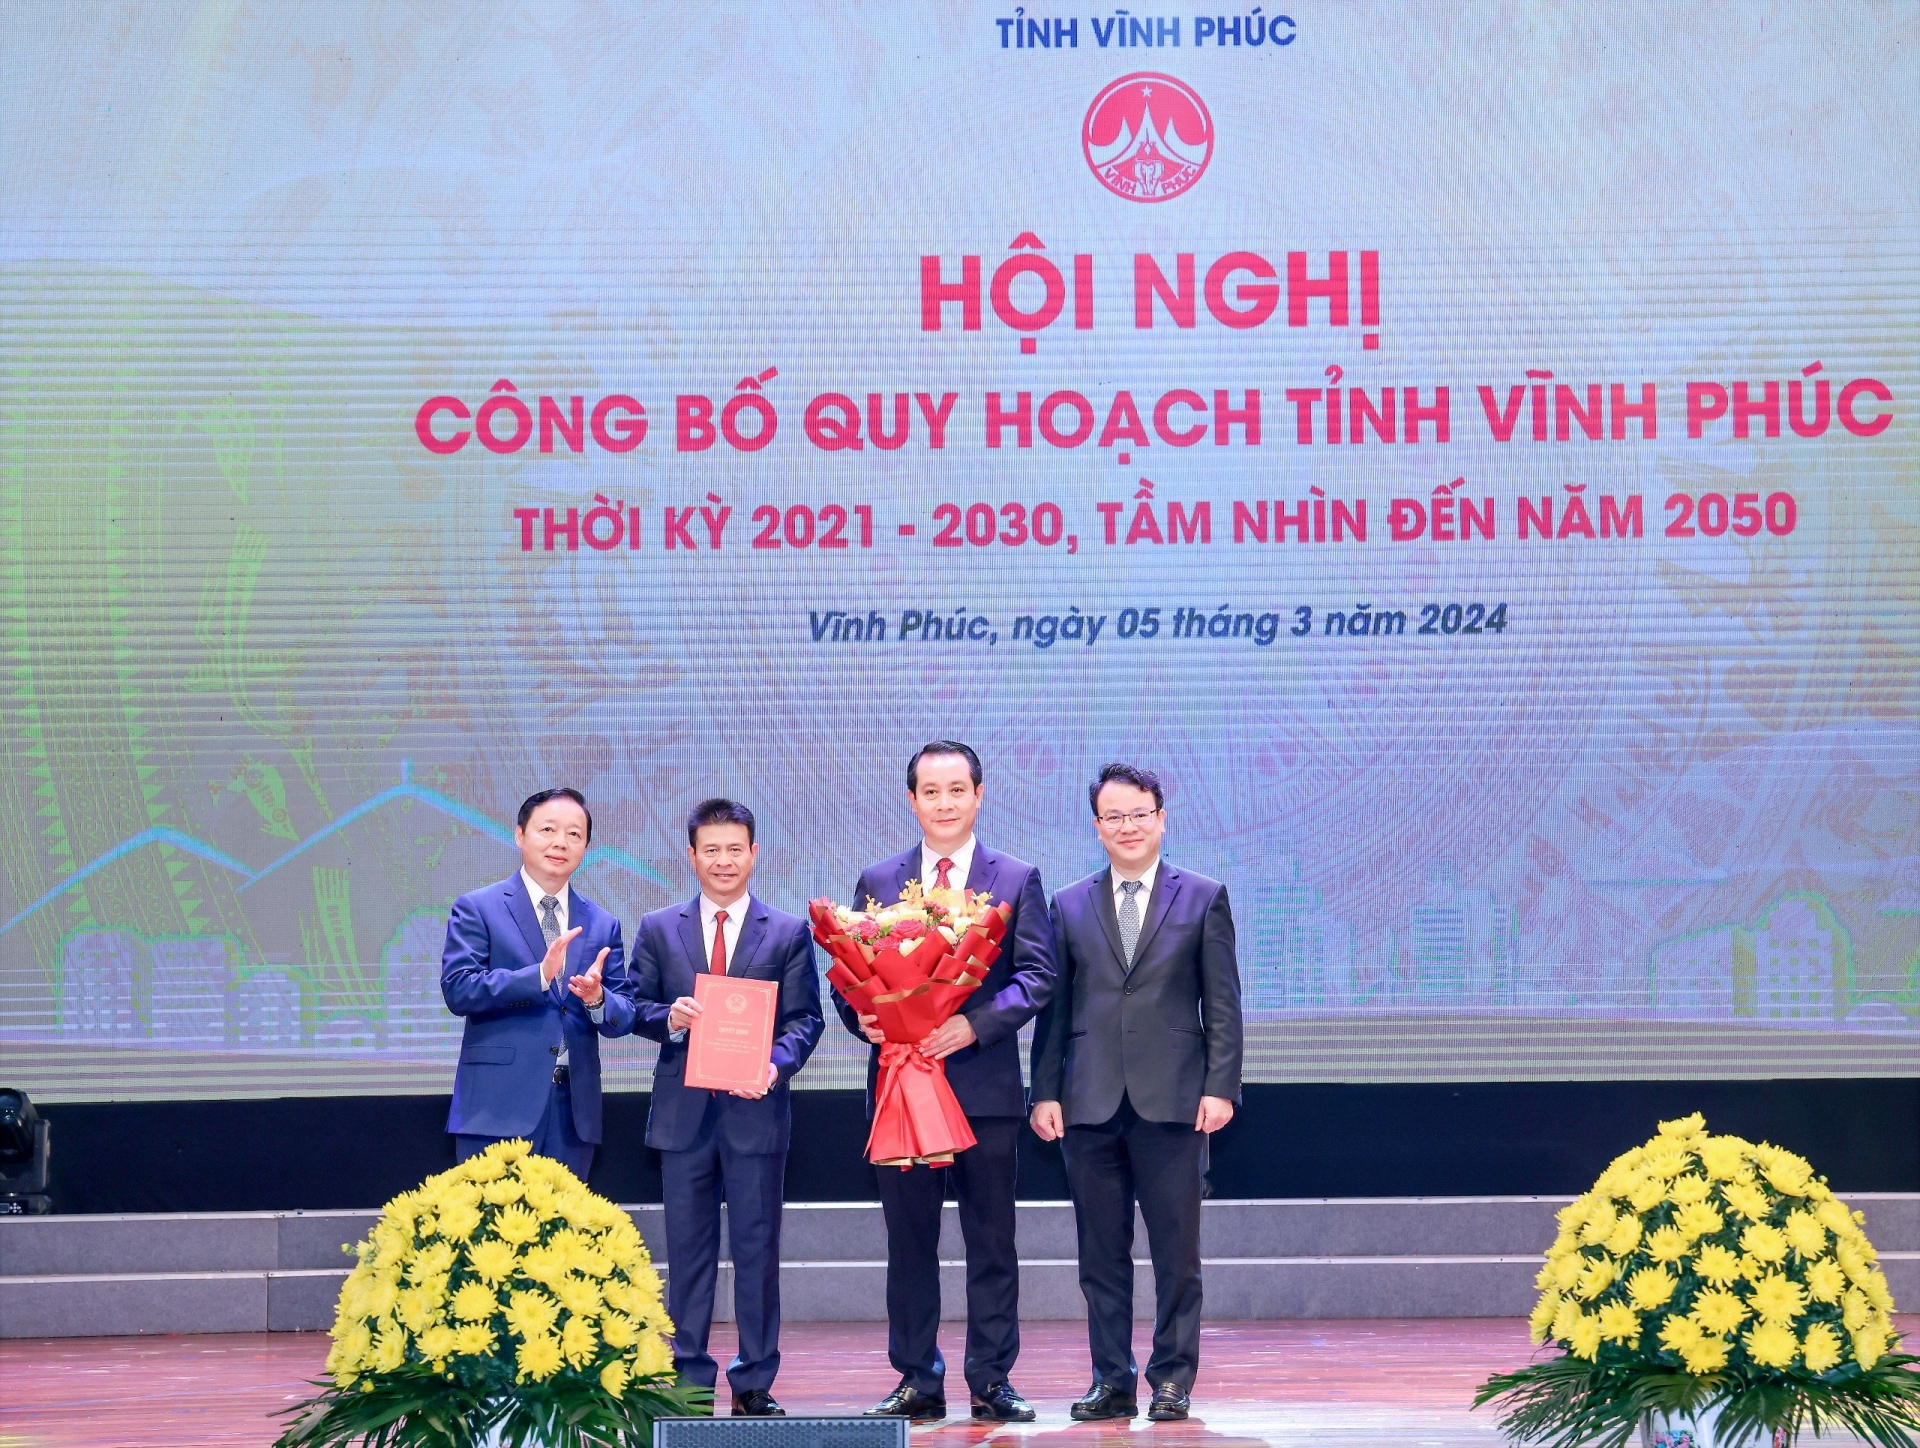 Phó Thủ tướng Trần Hồng Hà dự lễ công bố Quy hoạch tỉnh Vĩnh Phúc thời kỳ 2021 - 2030, tầm nhìn đến năm 2050